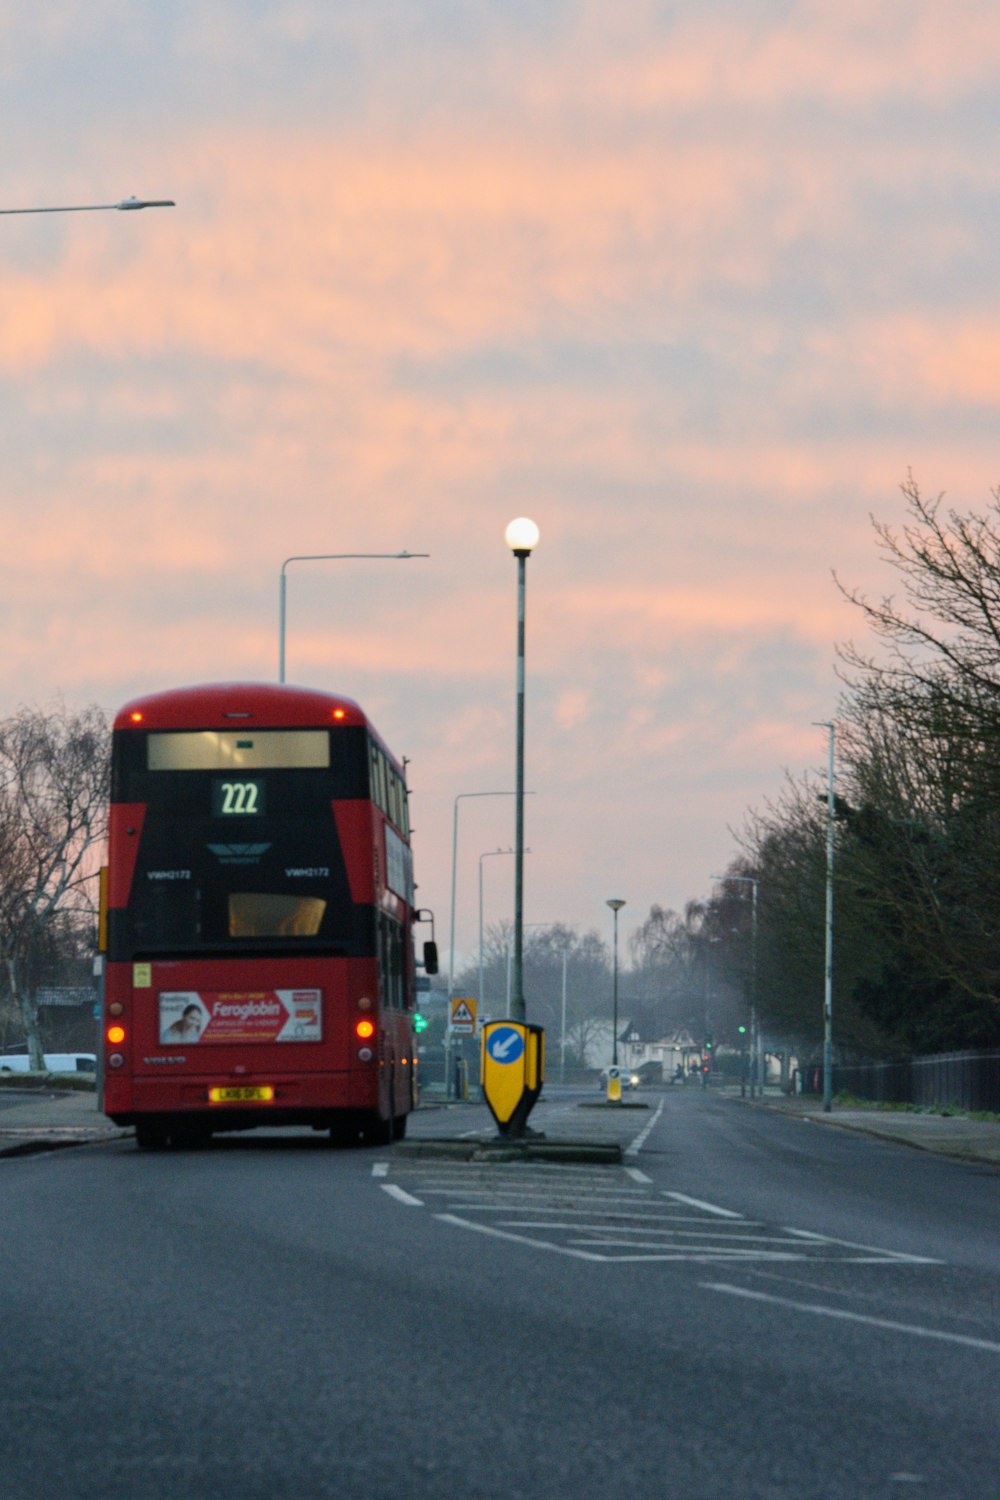 昼間の道路を走る赤と黒のバス